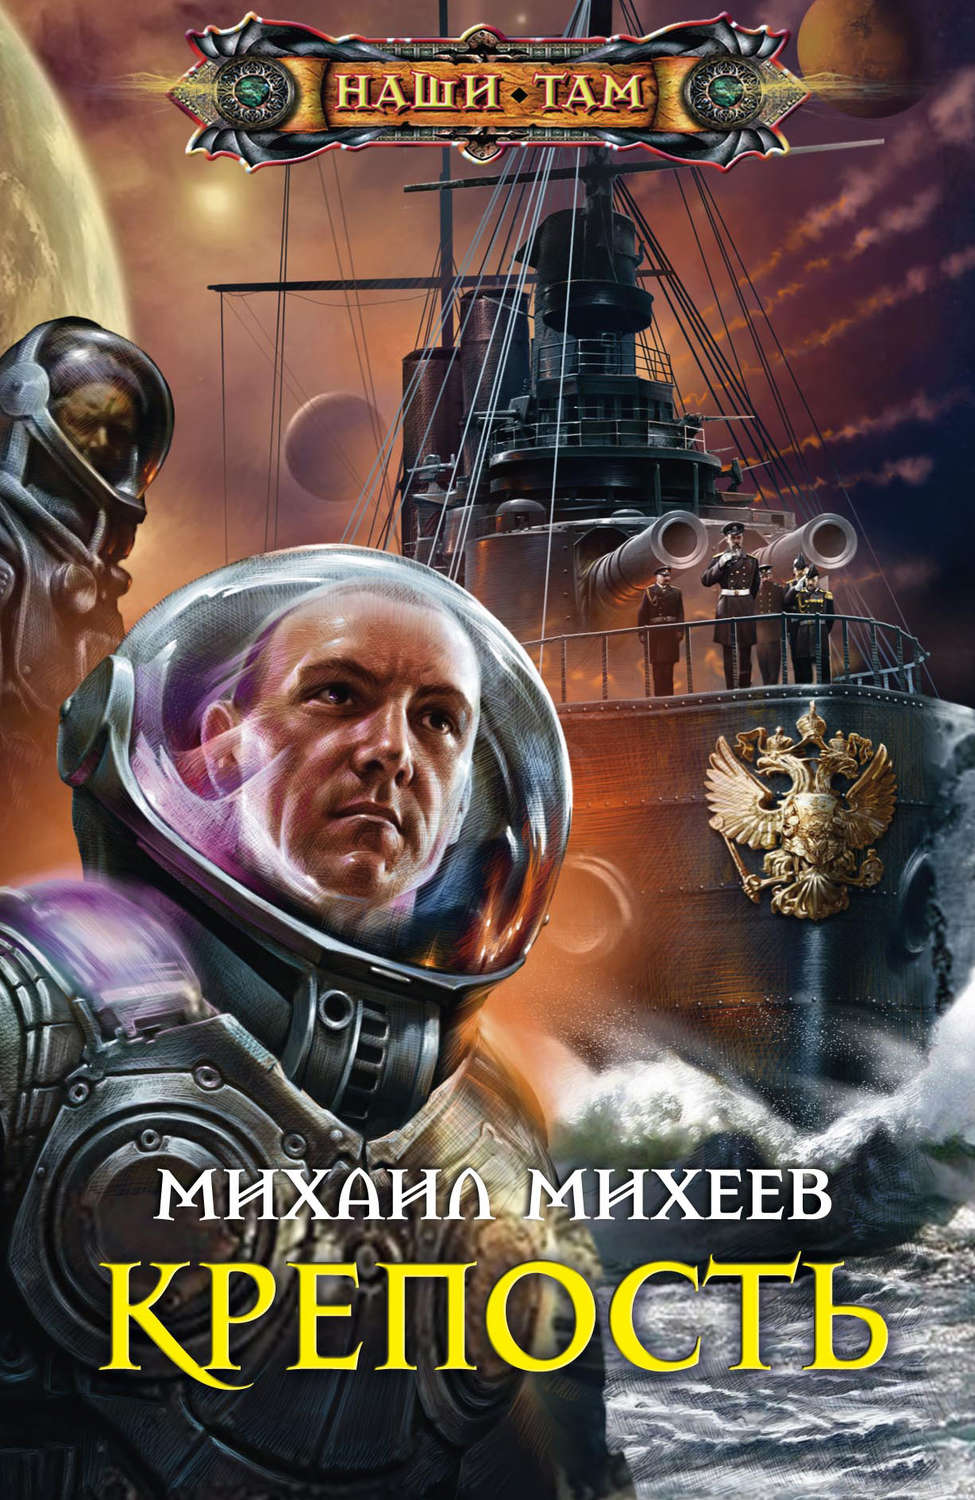 Алексей шеховцов все книги скачать бесплатно